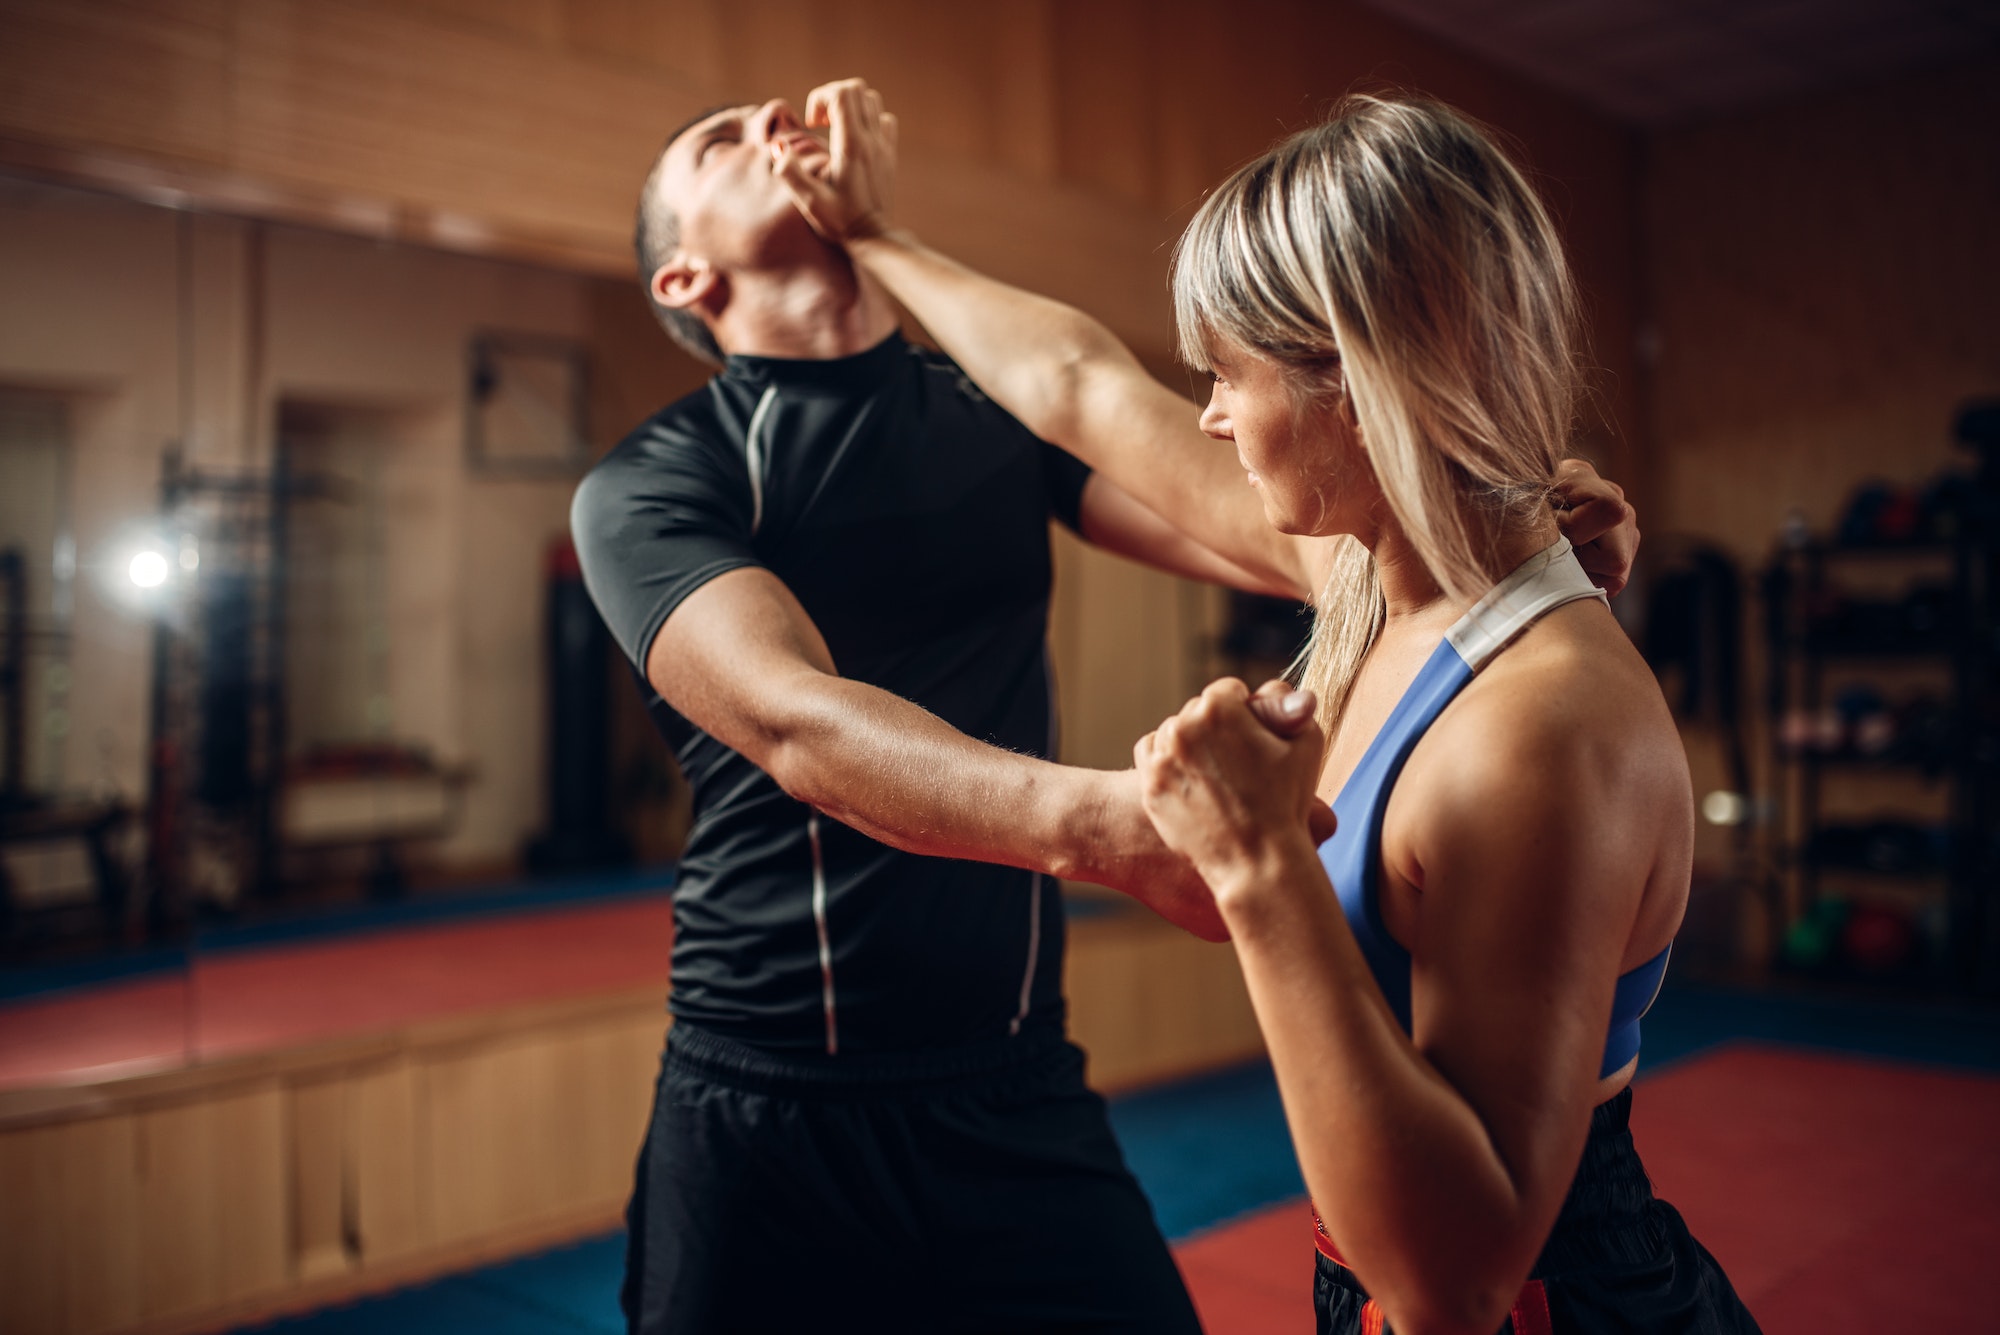 Une femme se défend face à un agresseur dans un scénario d'attaque dans un cours de self-défense avec son entraîneur